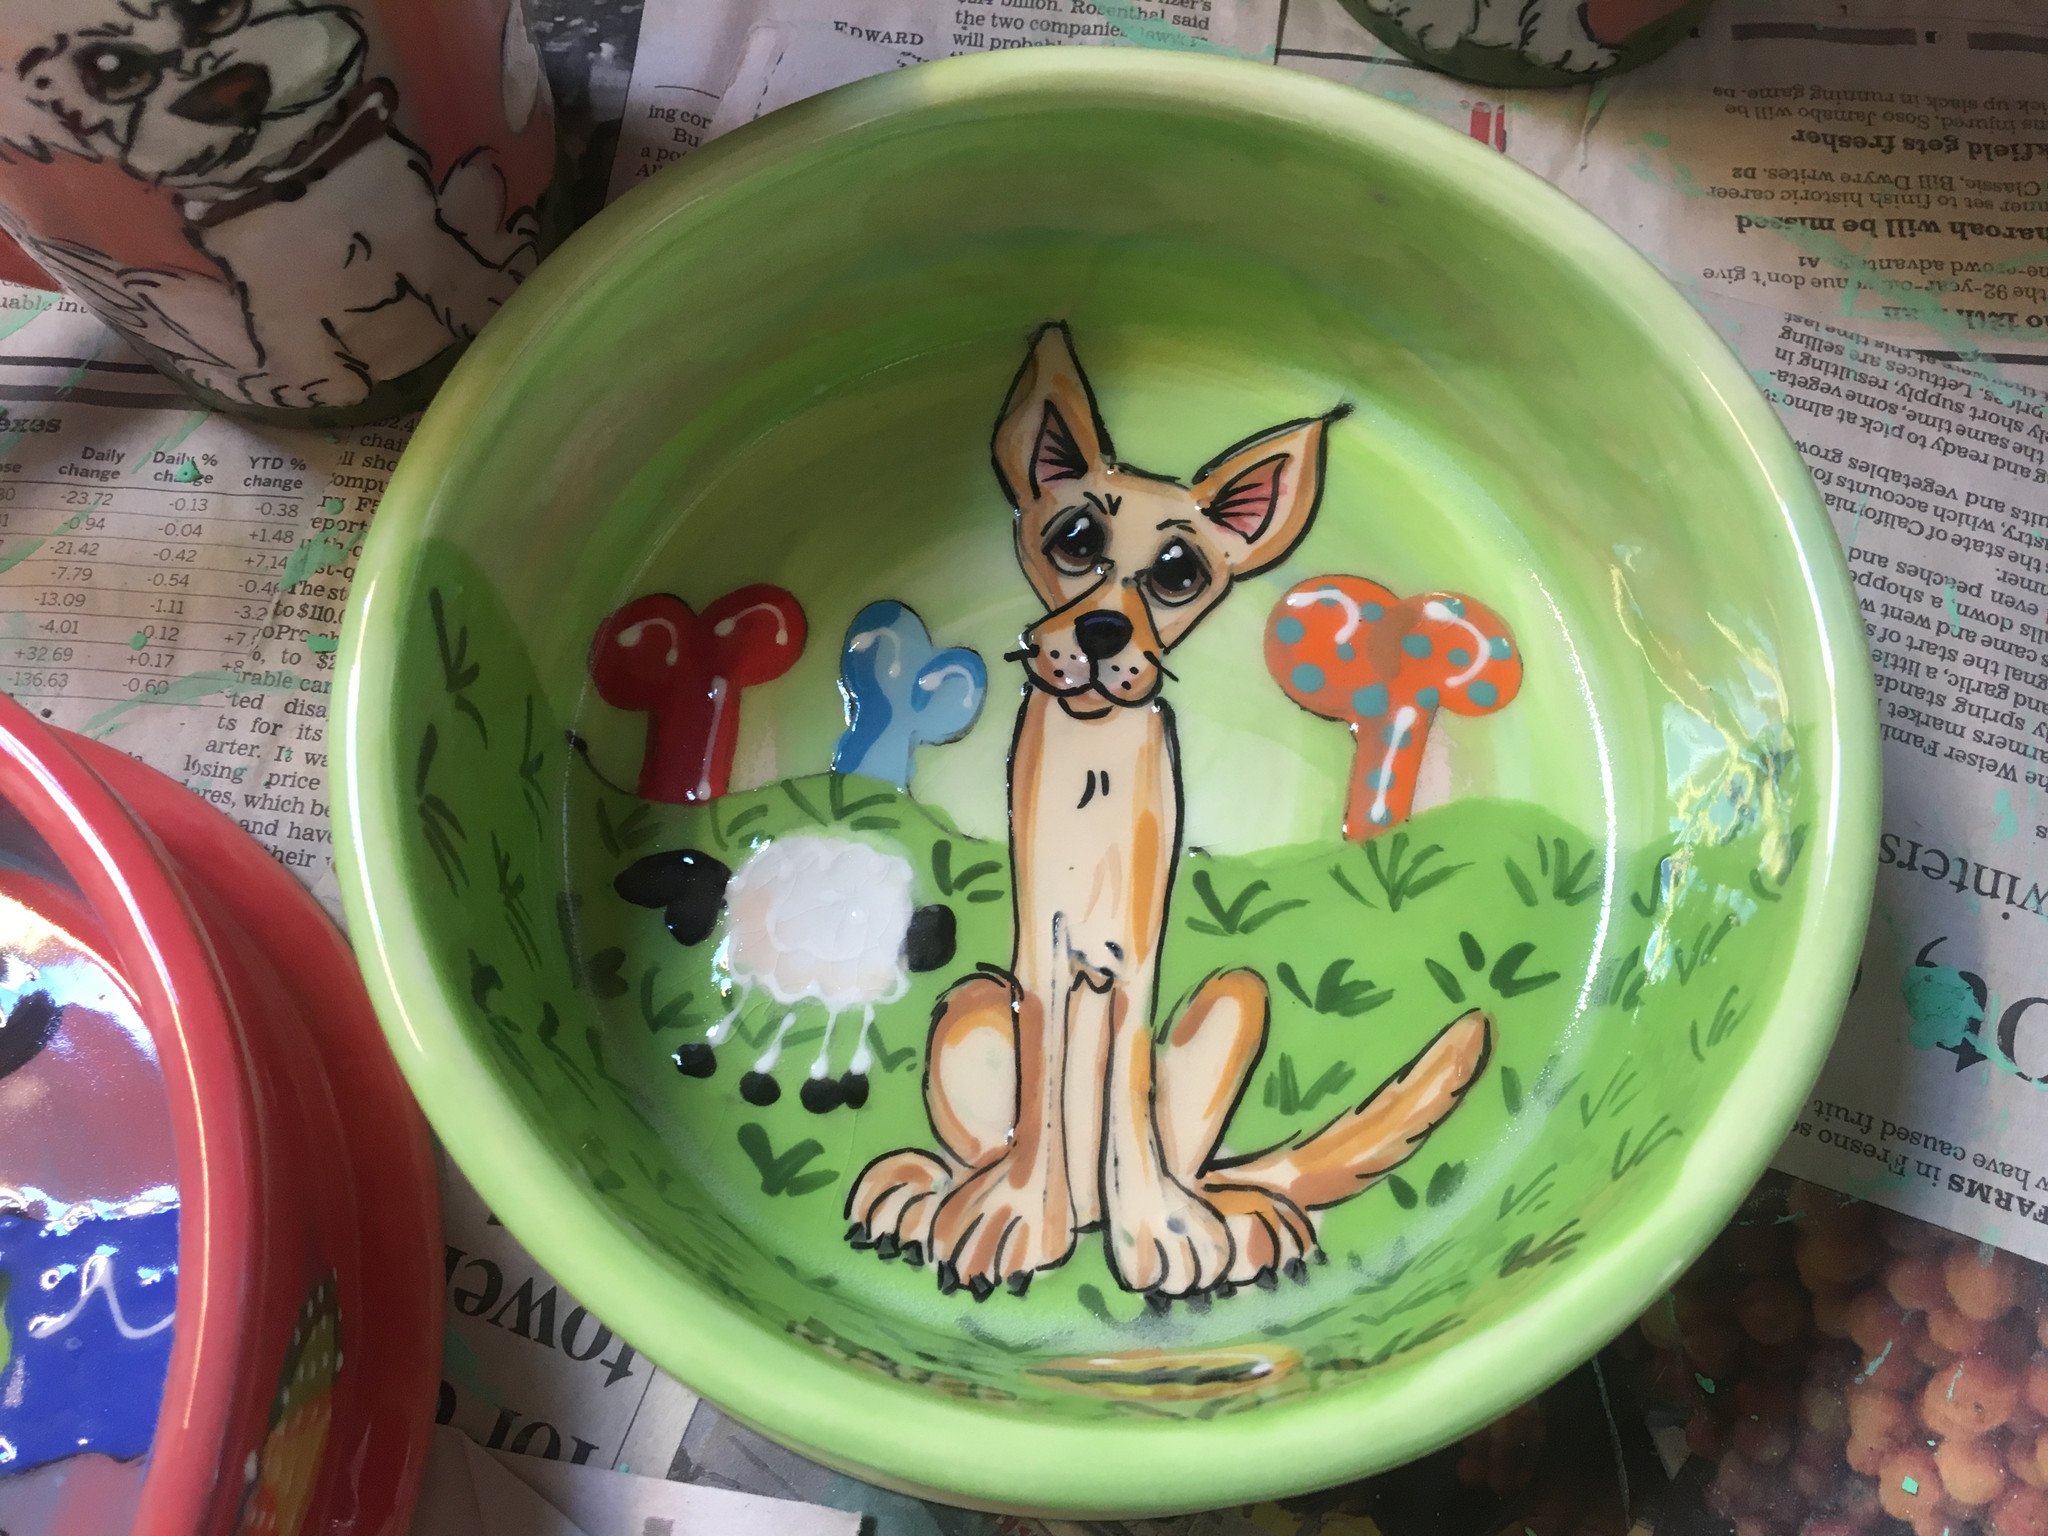 Chihuahua Dog Bowl